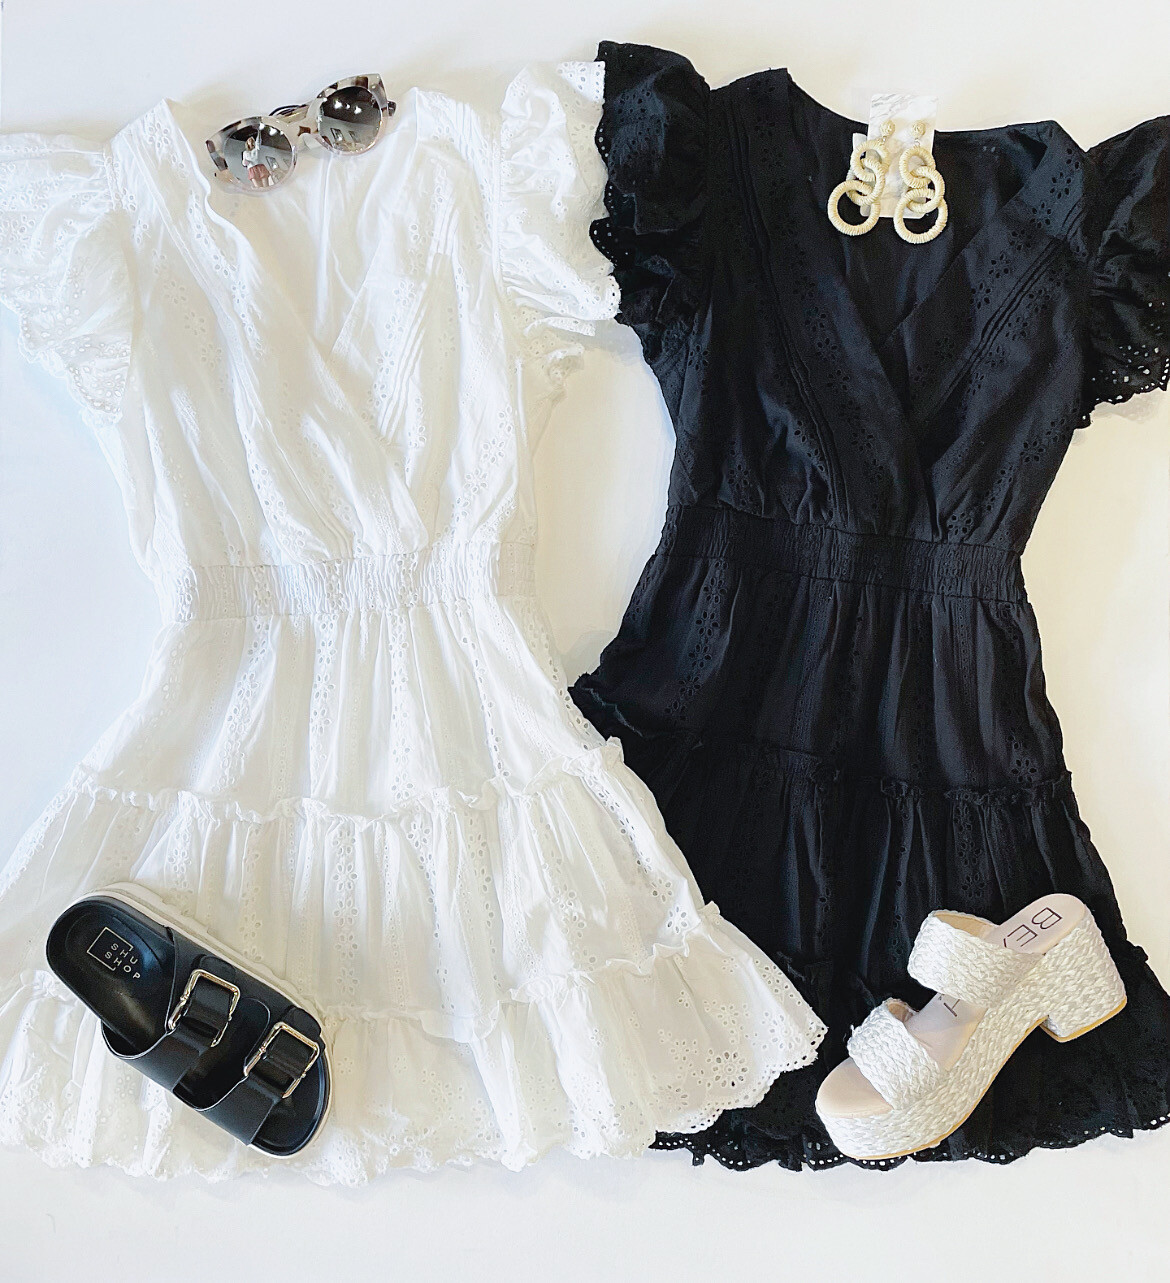 All Summer Long Eyelet Dress (white)